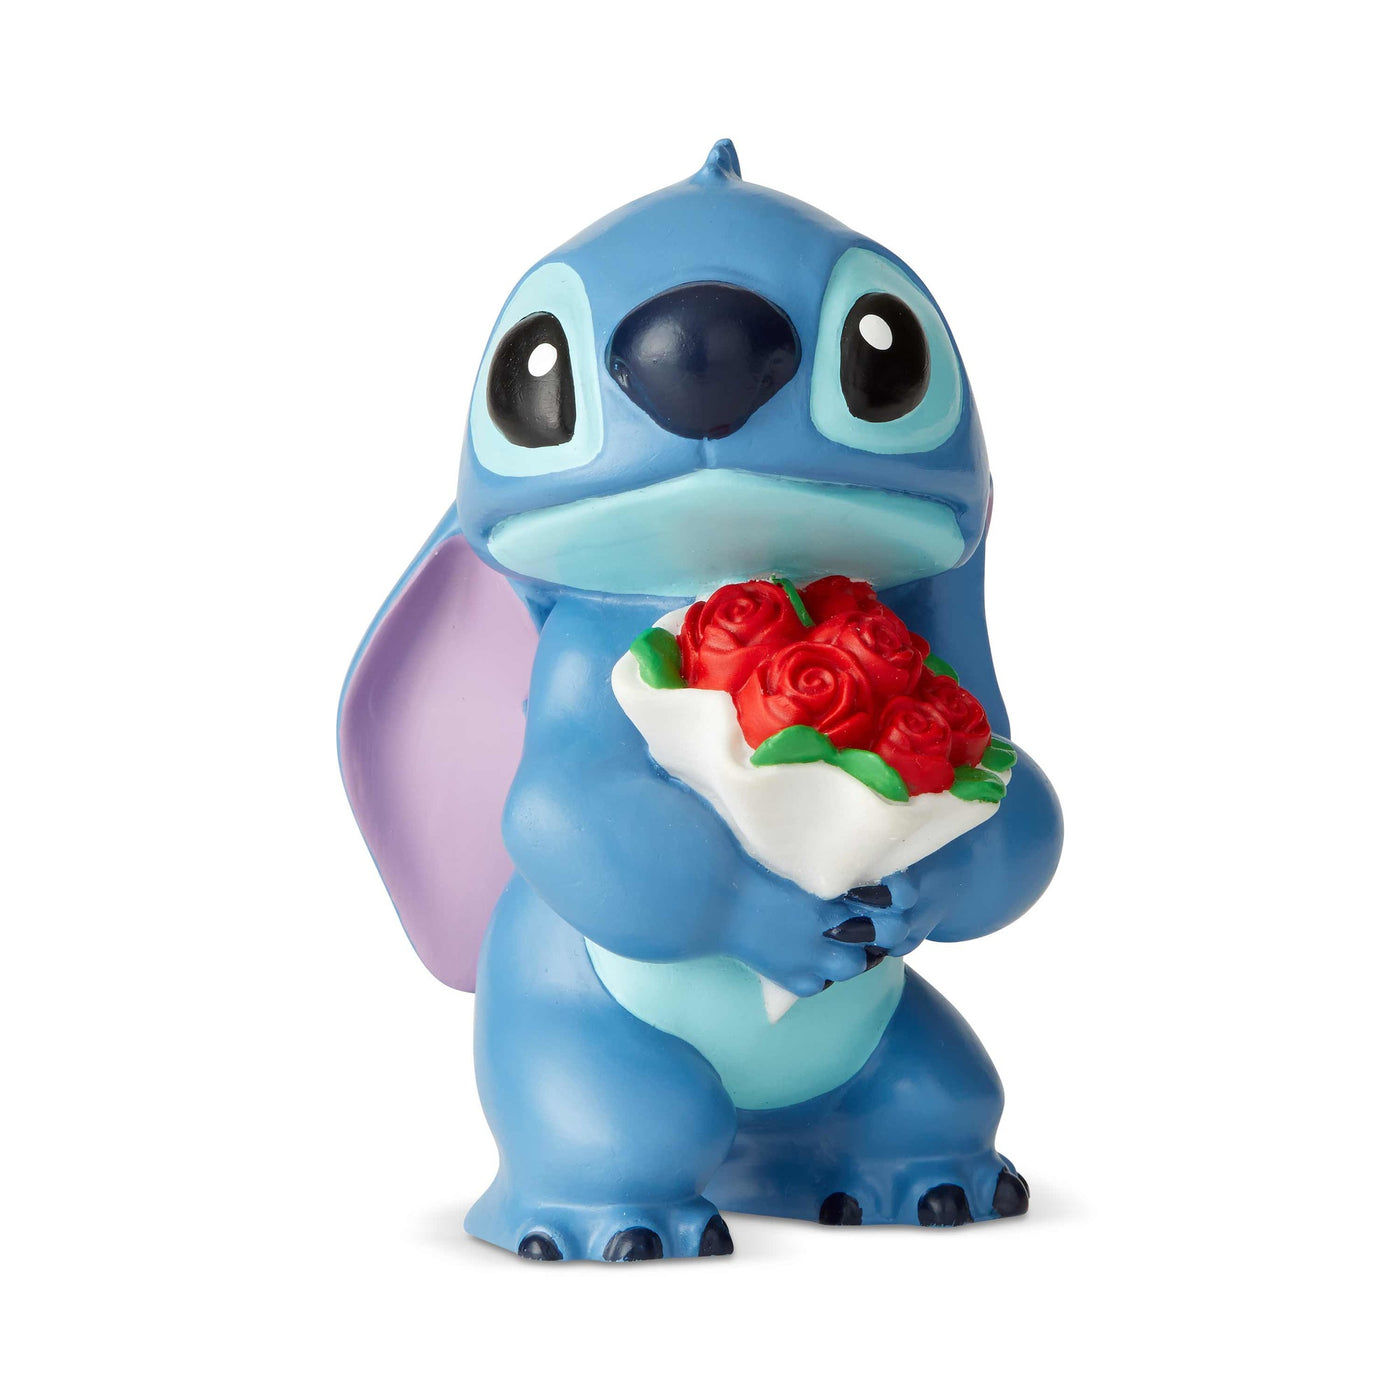 Disney Showcase Stitch with Flowers Mini Figurine New with Box